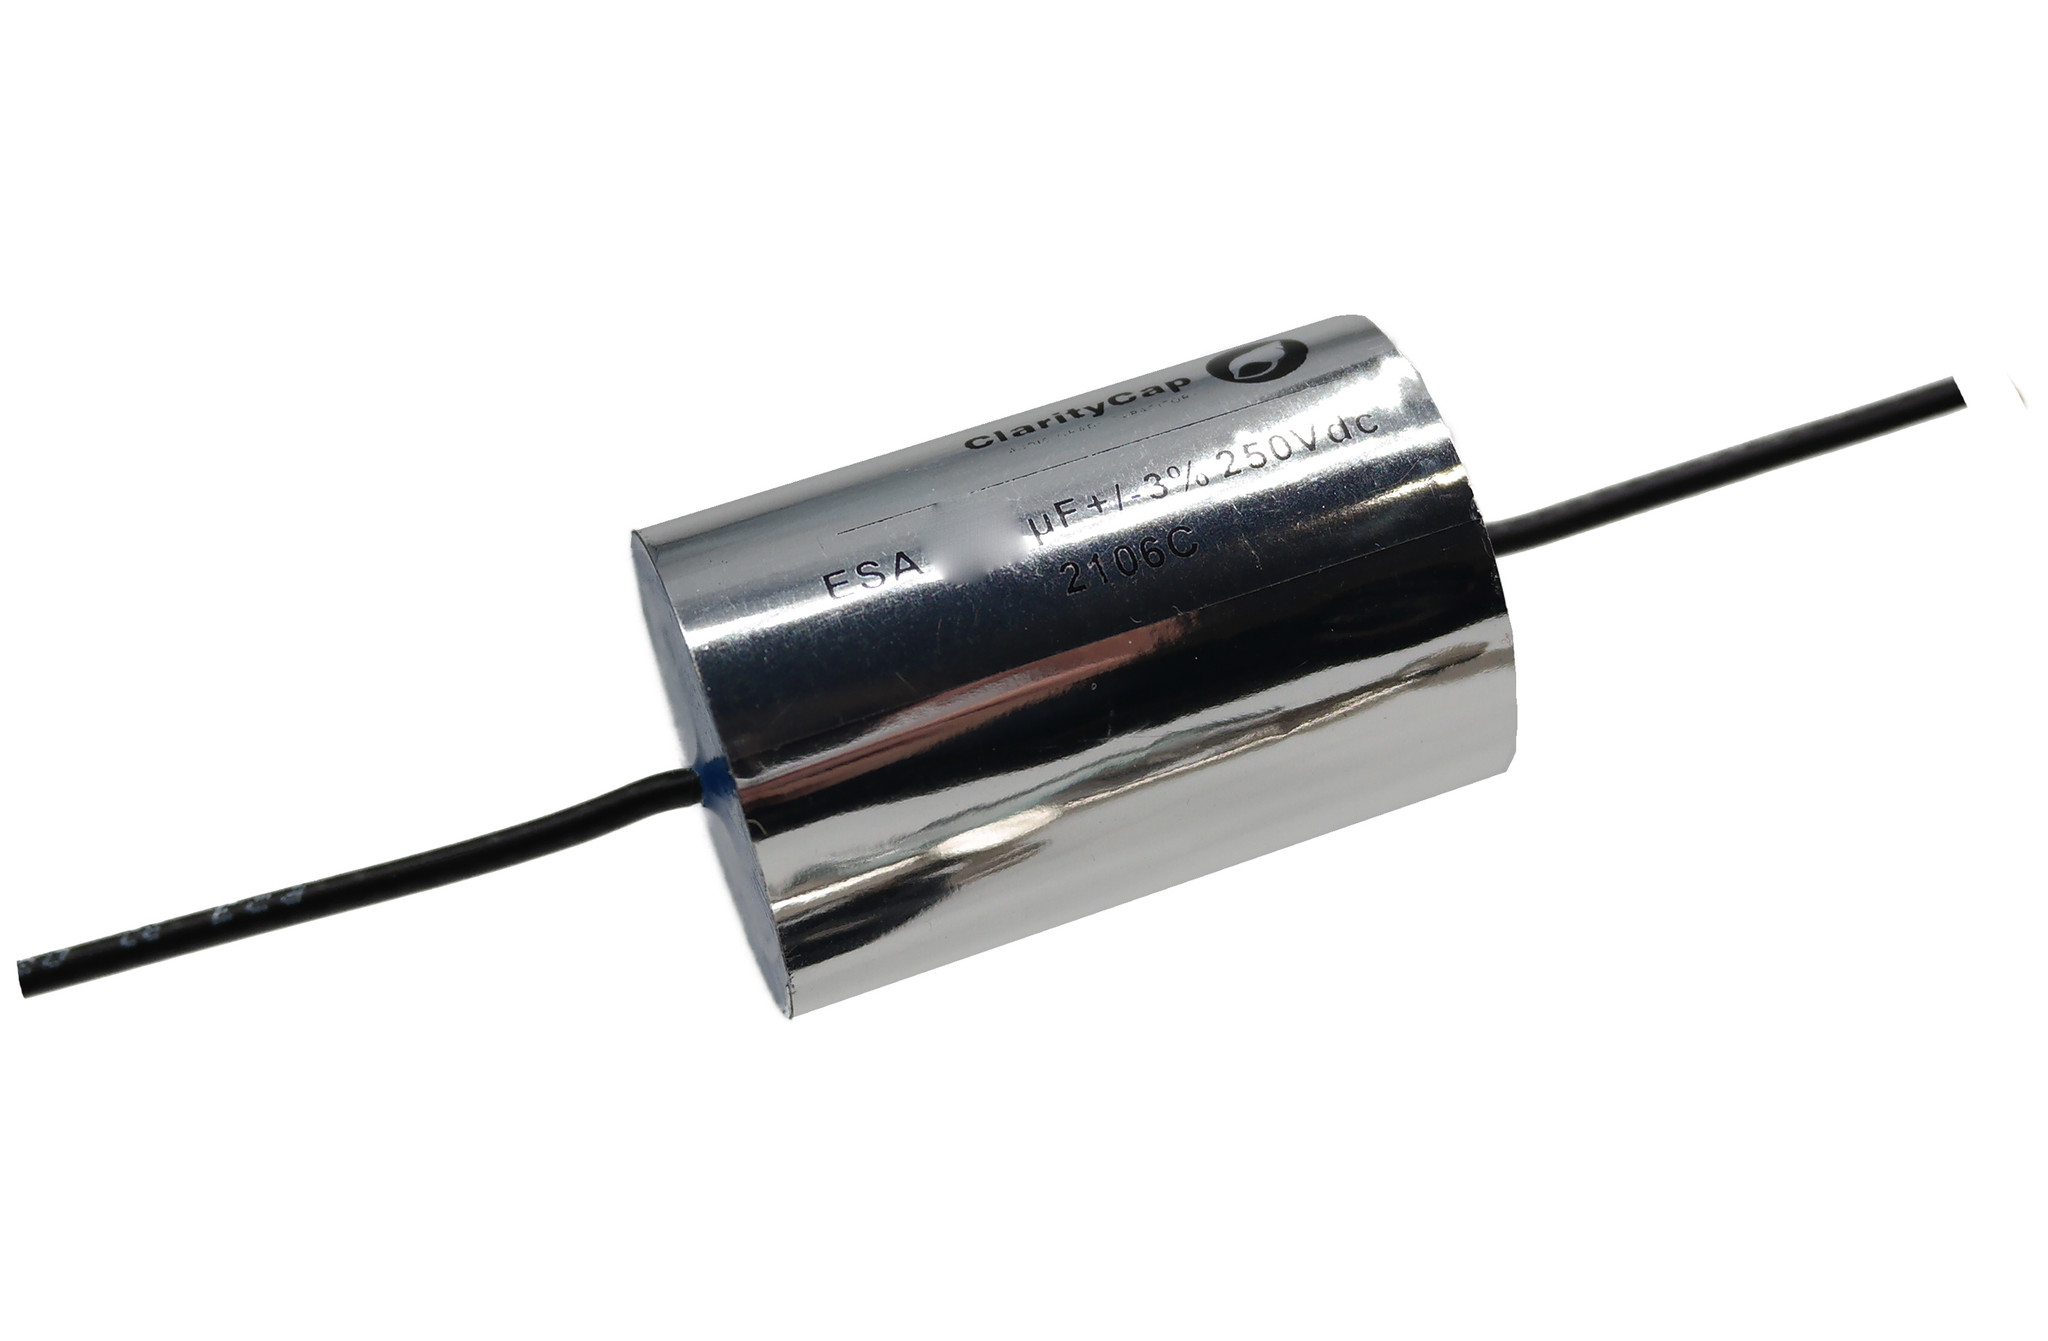 Condensatoare - Condensator film ClarityCap ESA18uH250Vdc | 18 µF | 3% | 250 V, audioclub.ro